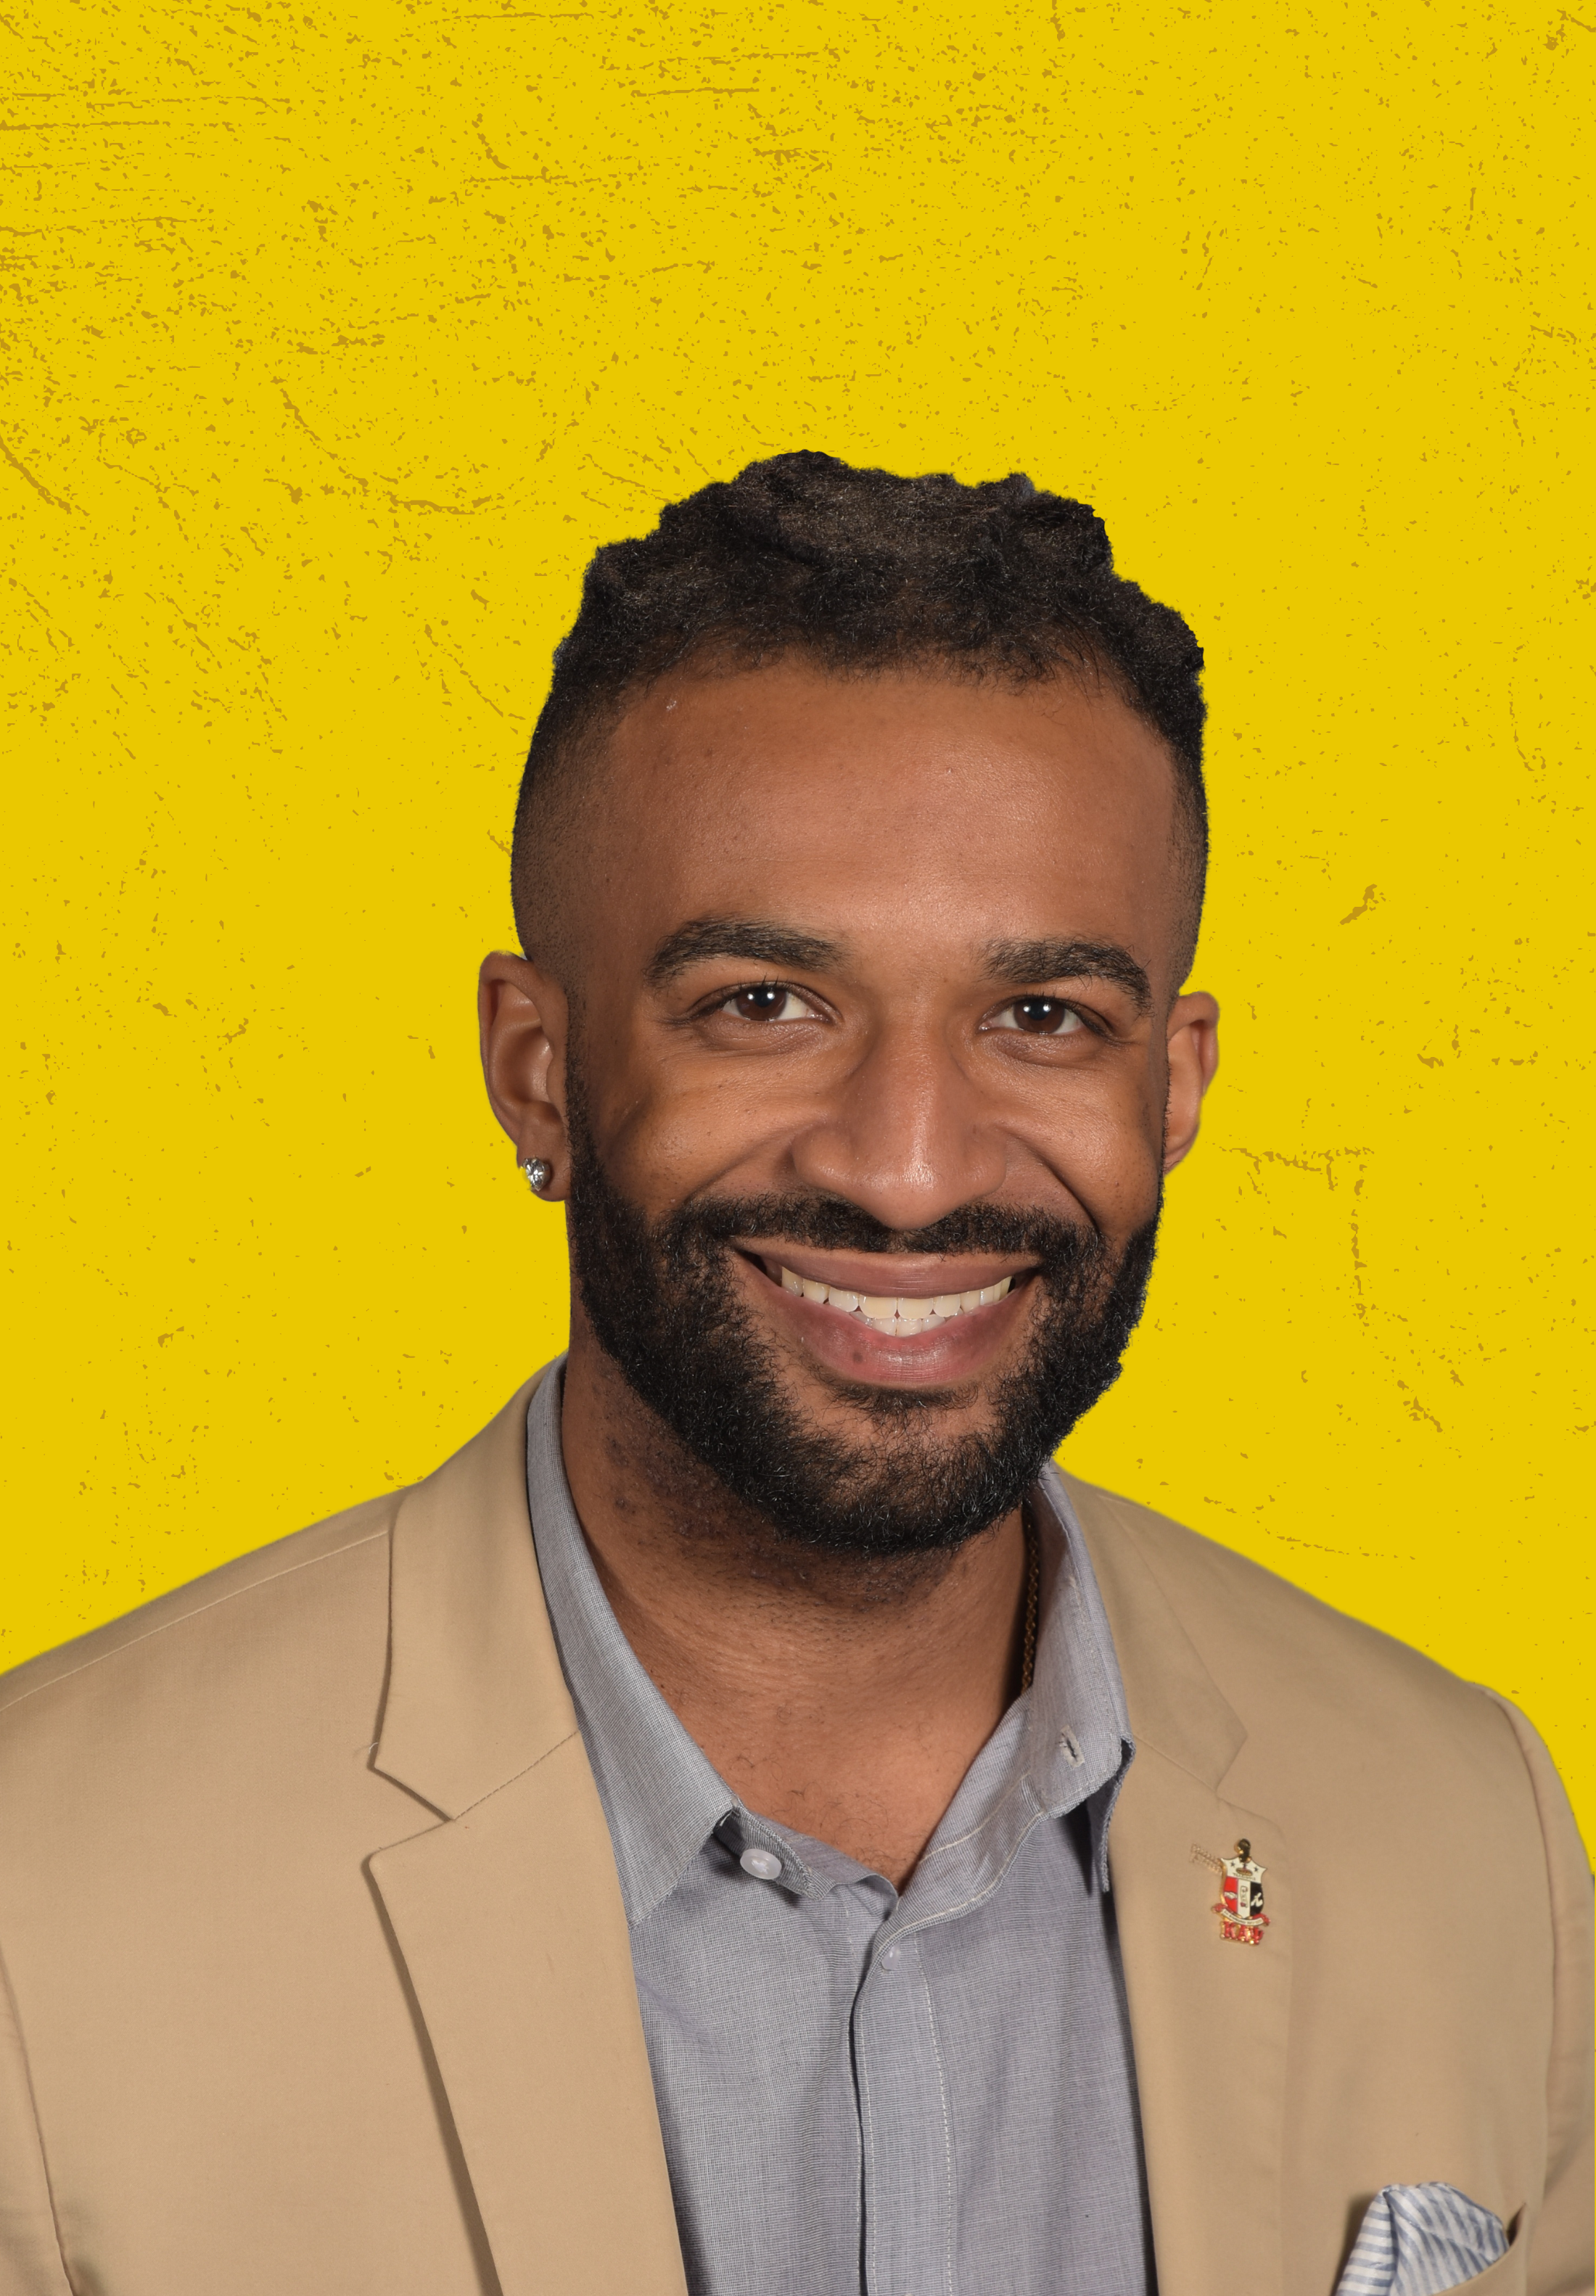 headshot of Jordan Jones, Possip Sales team member, with yellow background.